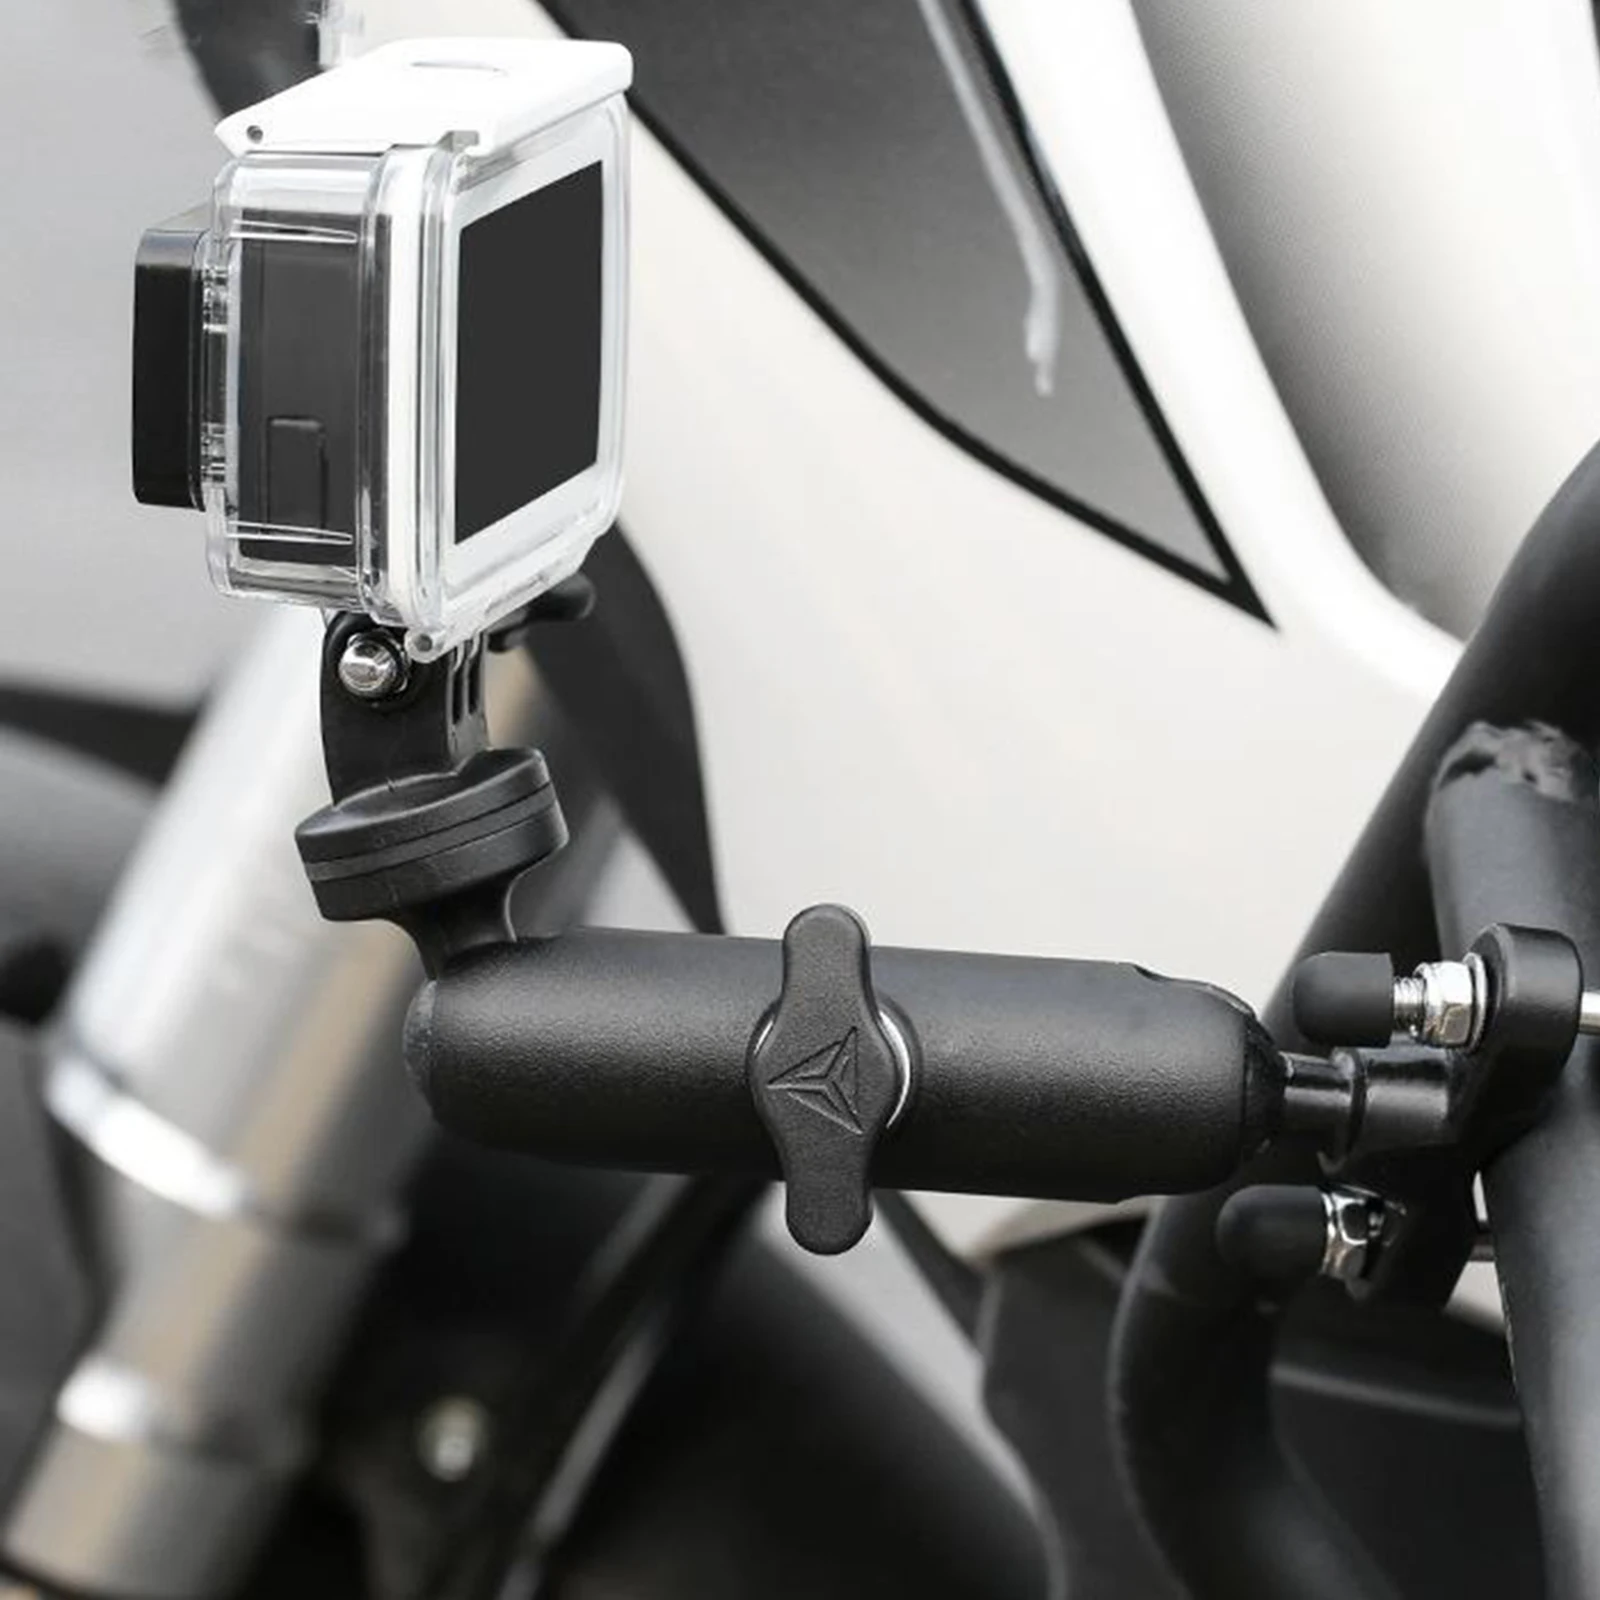 

Крепление на руль камеры велосипеда/зеркало 1/4 зажим Кронштейн Подставка для GoPro 9/8/7/6/5/4/3 +, для камер Xiaomi Yi 4K